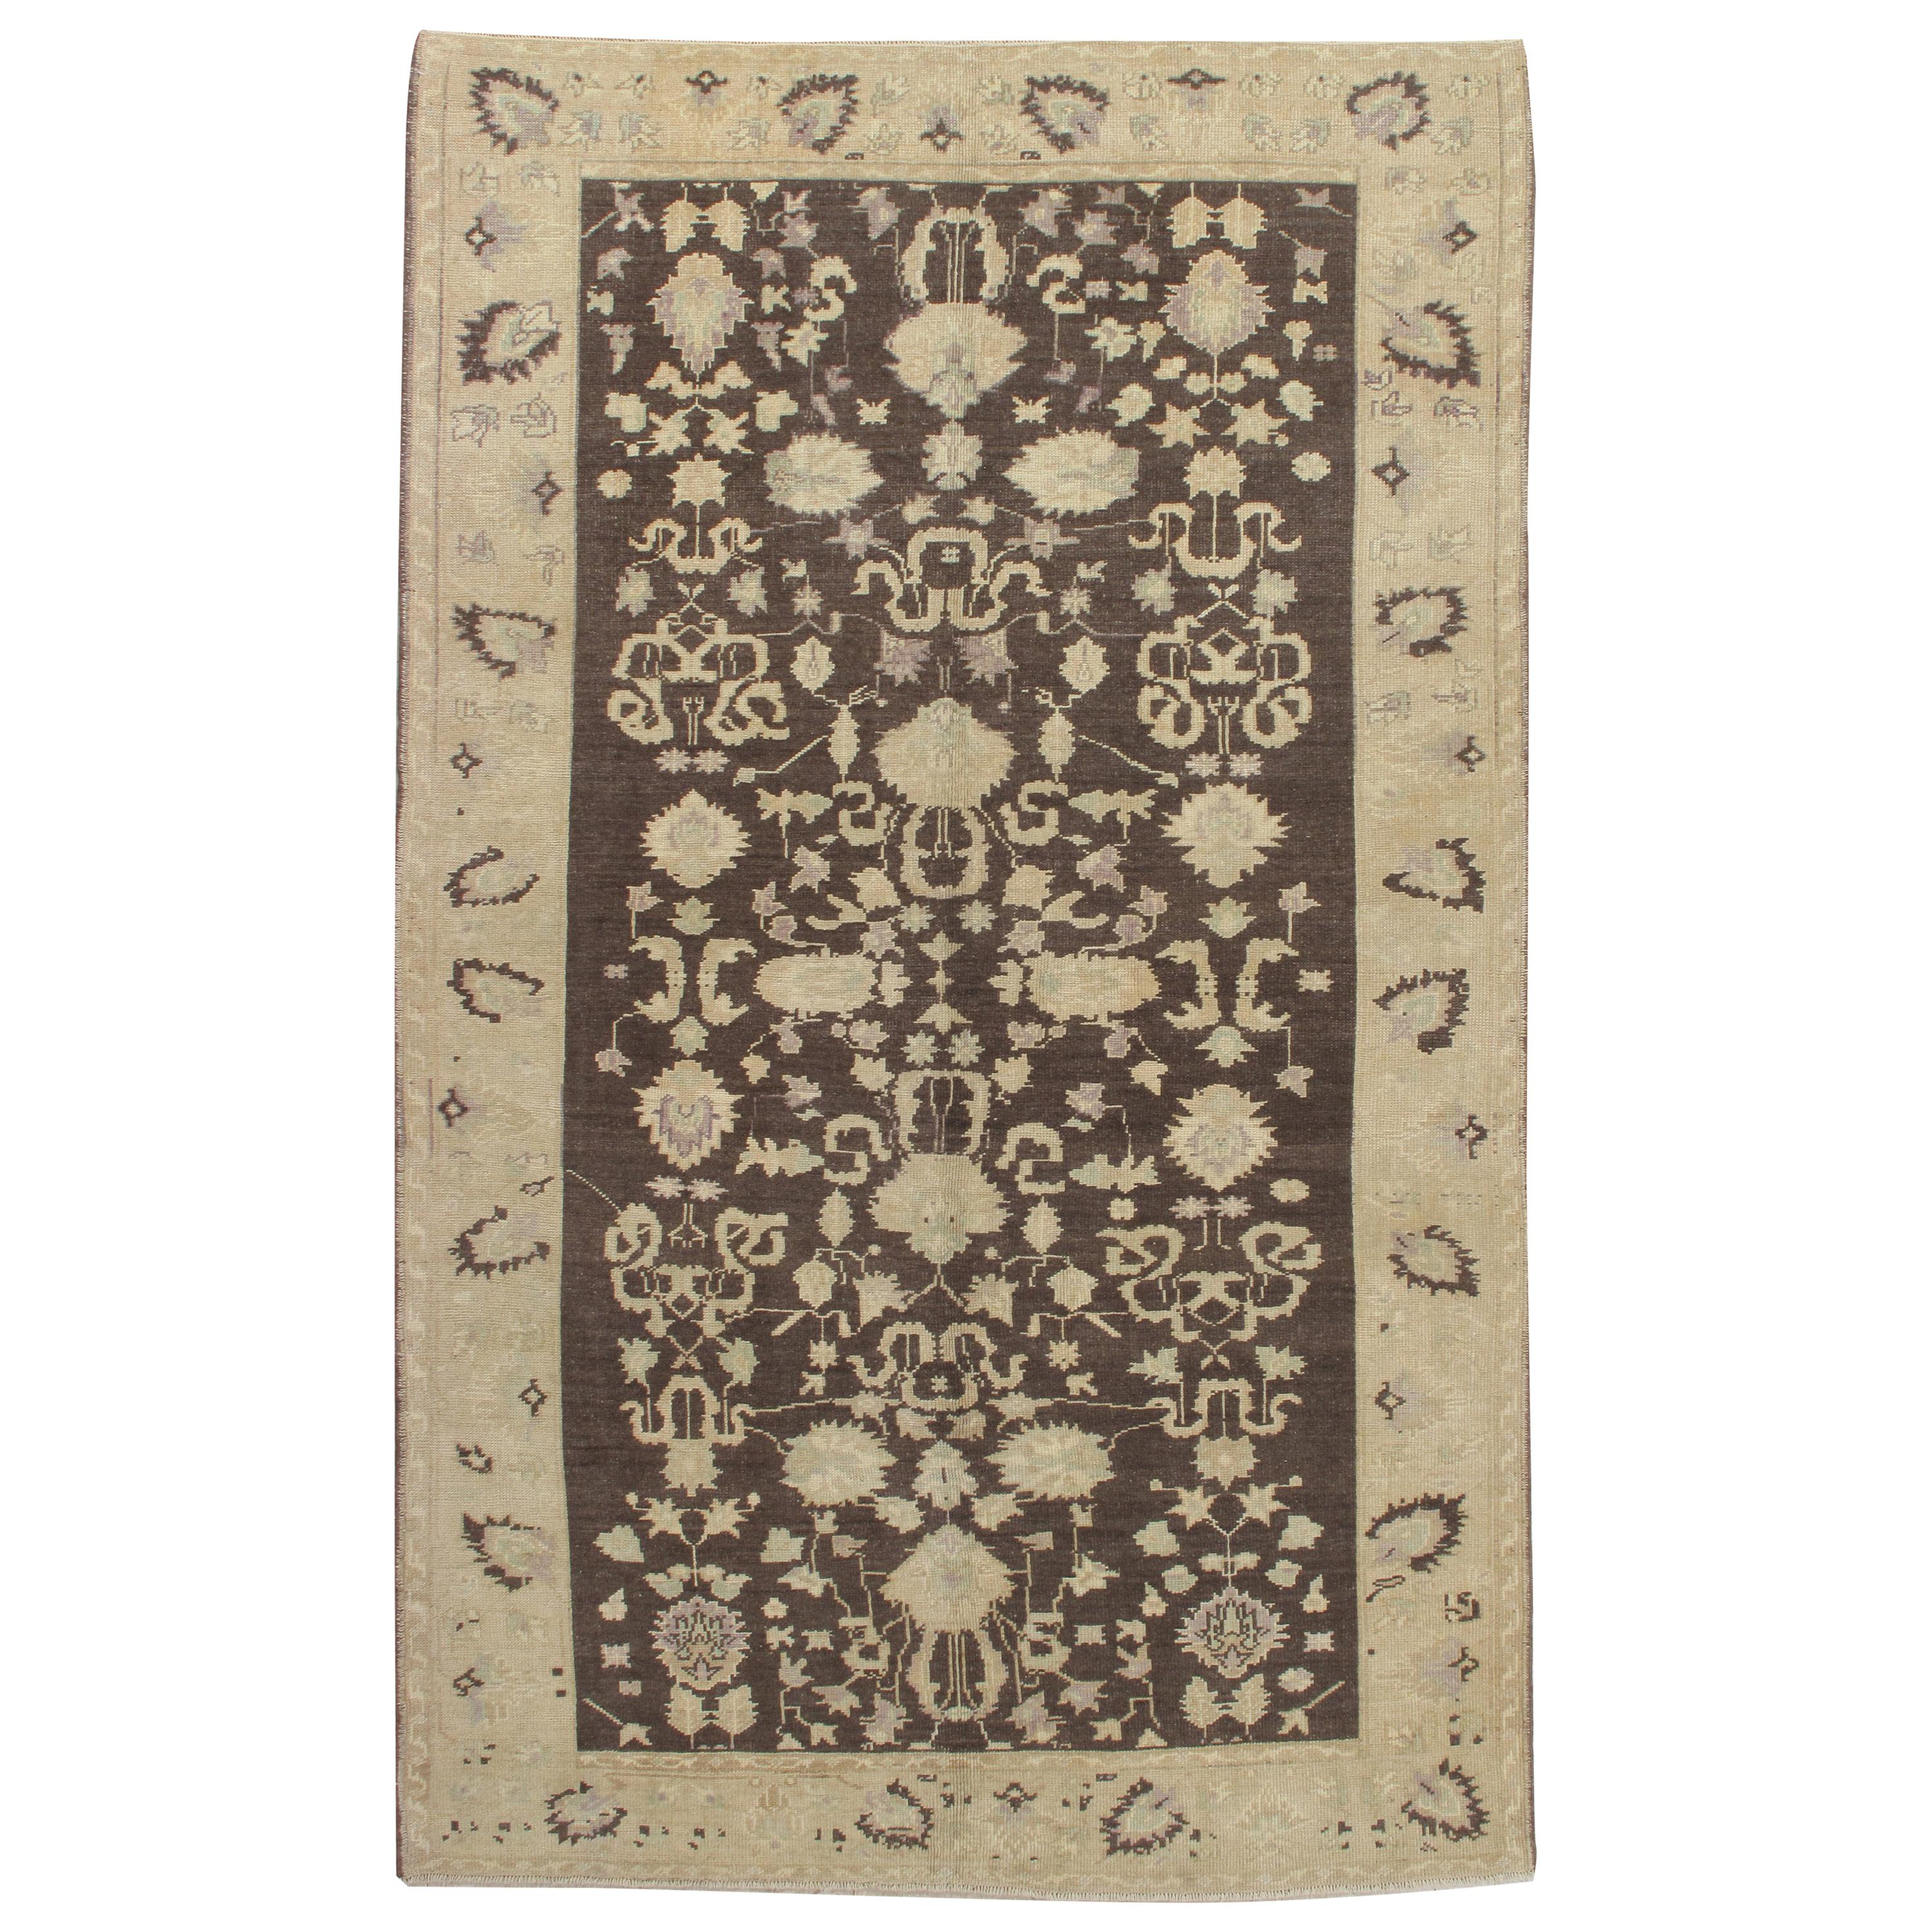 Tapis antique Oushak, tapis turc oriental fait à la main, beige, taupe, anthracite